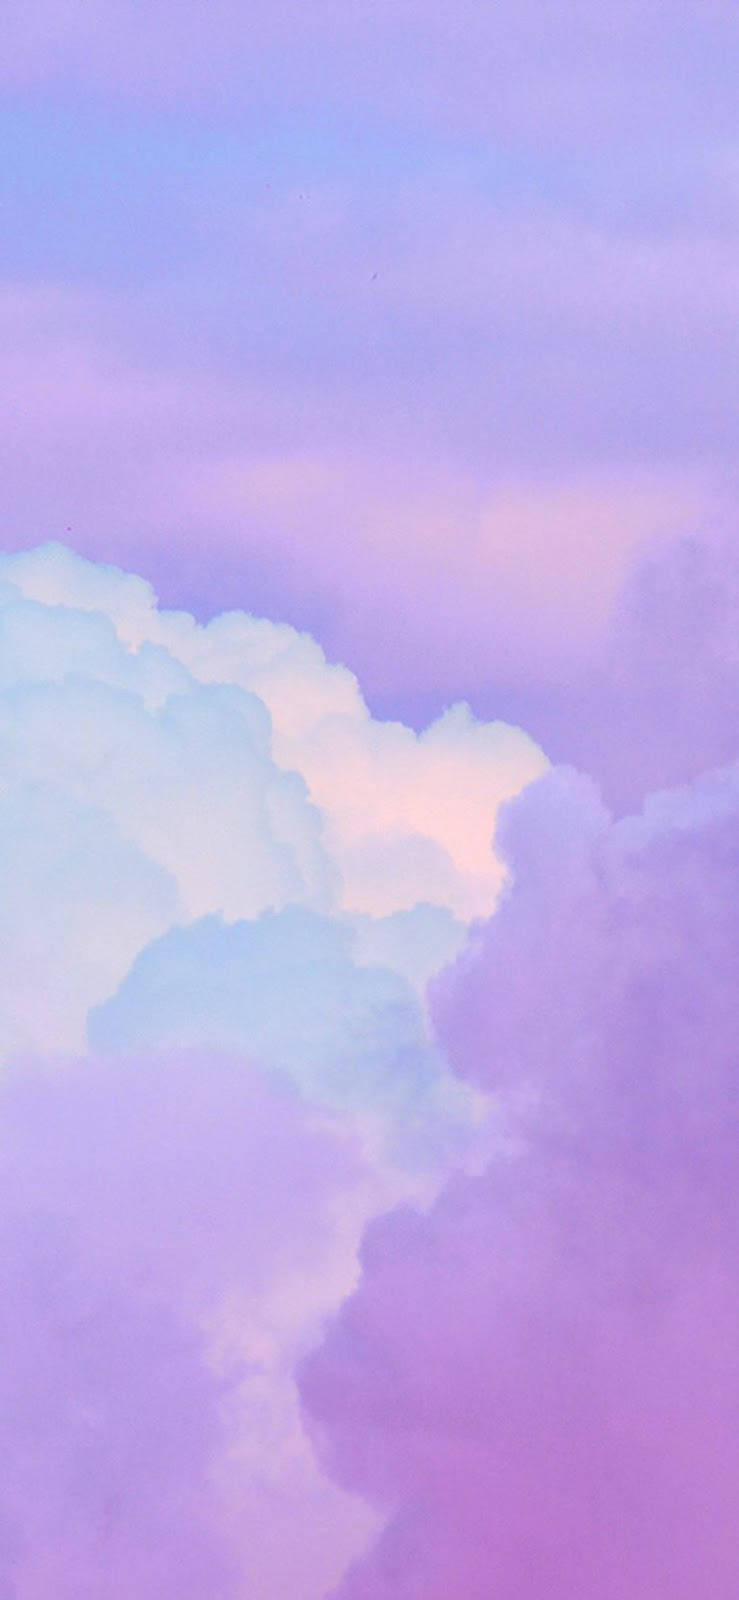 Khi bạn cảm thấy cần một chút thư giãn, hãy nhìn vào hình nền mây tím nhạt và cảm nhận sự thanh thản. Ảnh không chỉ đẹp mà còn mang lại cho bạn cảm giác yên bình như đang ngồi dưới bầu trời trong veo. Hãy thưởng thức ảnh và đắm mình trong không gian tĩnh lặng của mây tím nhạt.